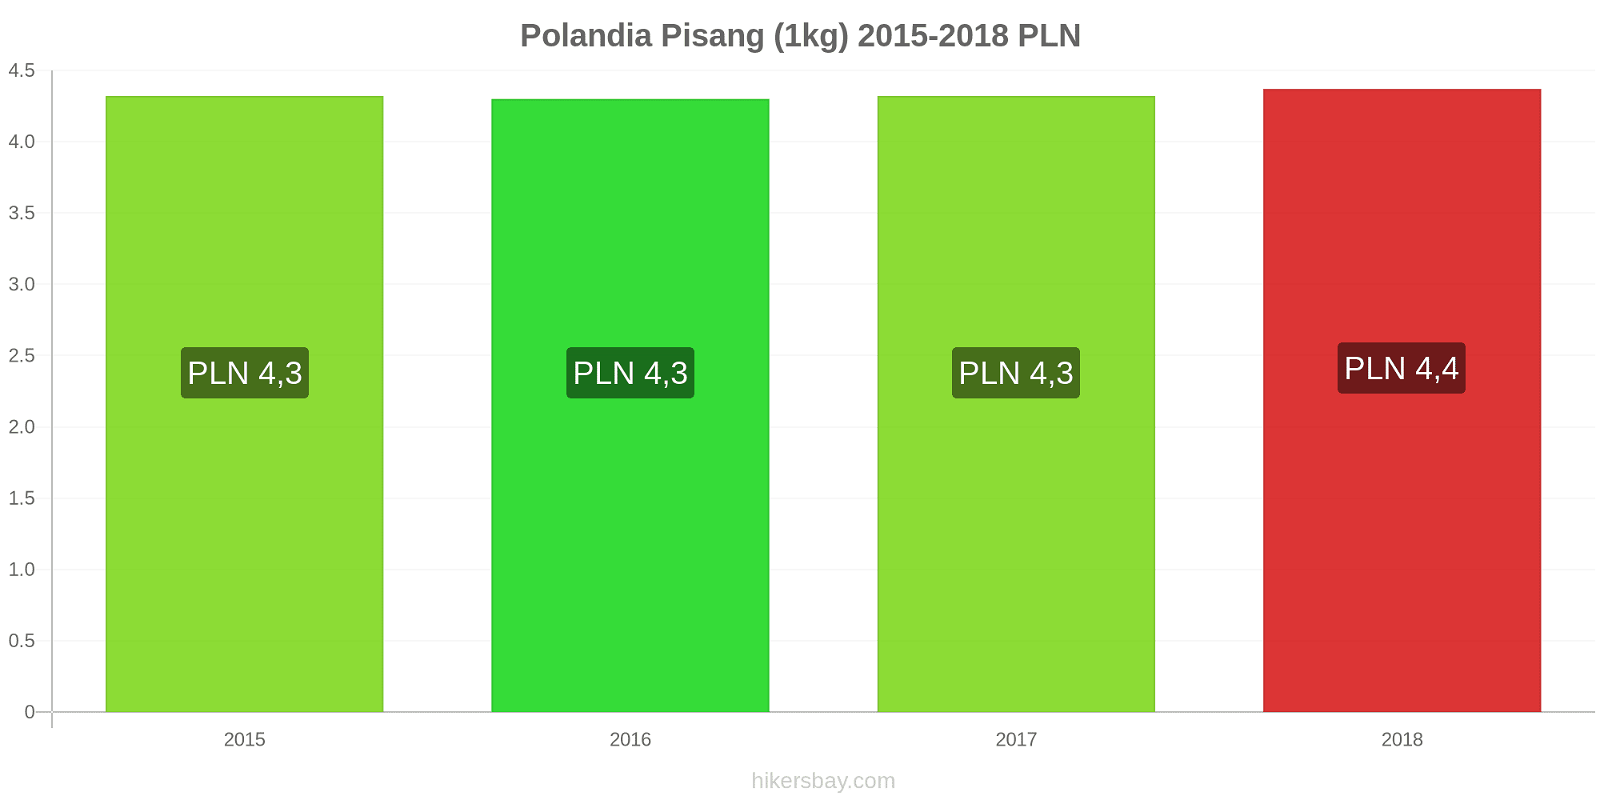 Polandia perubahan harga Pisang (1kg) hikersbay.com